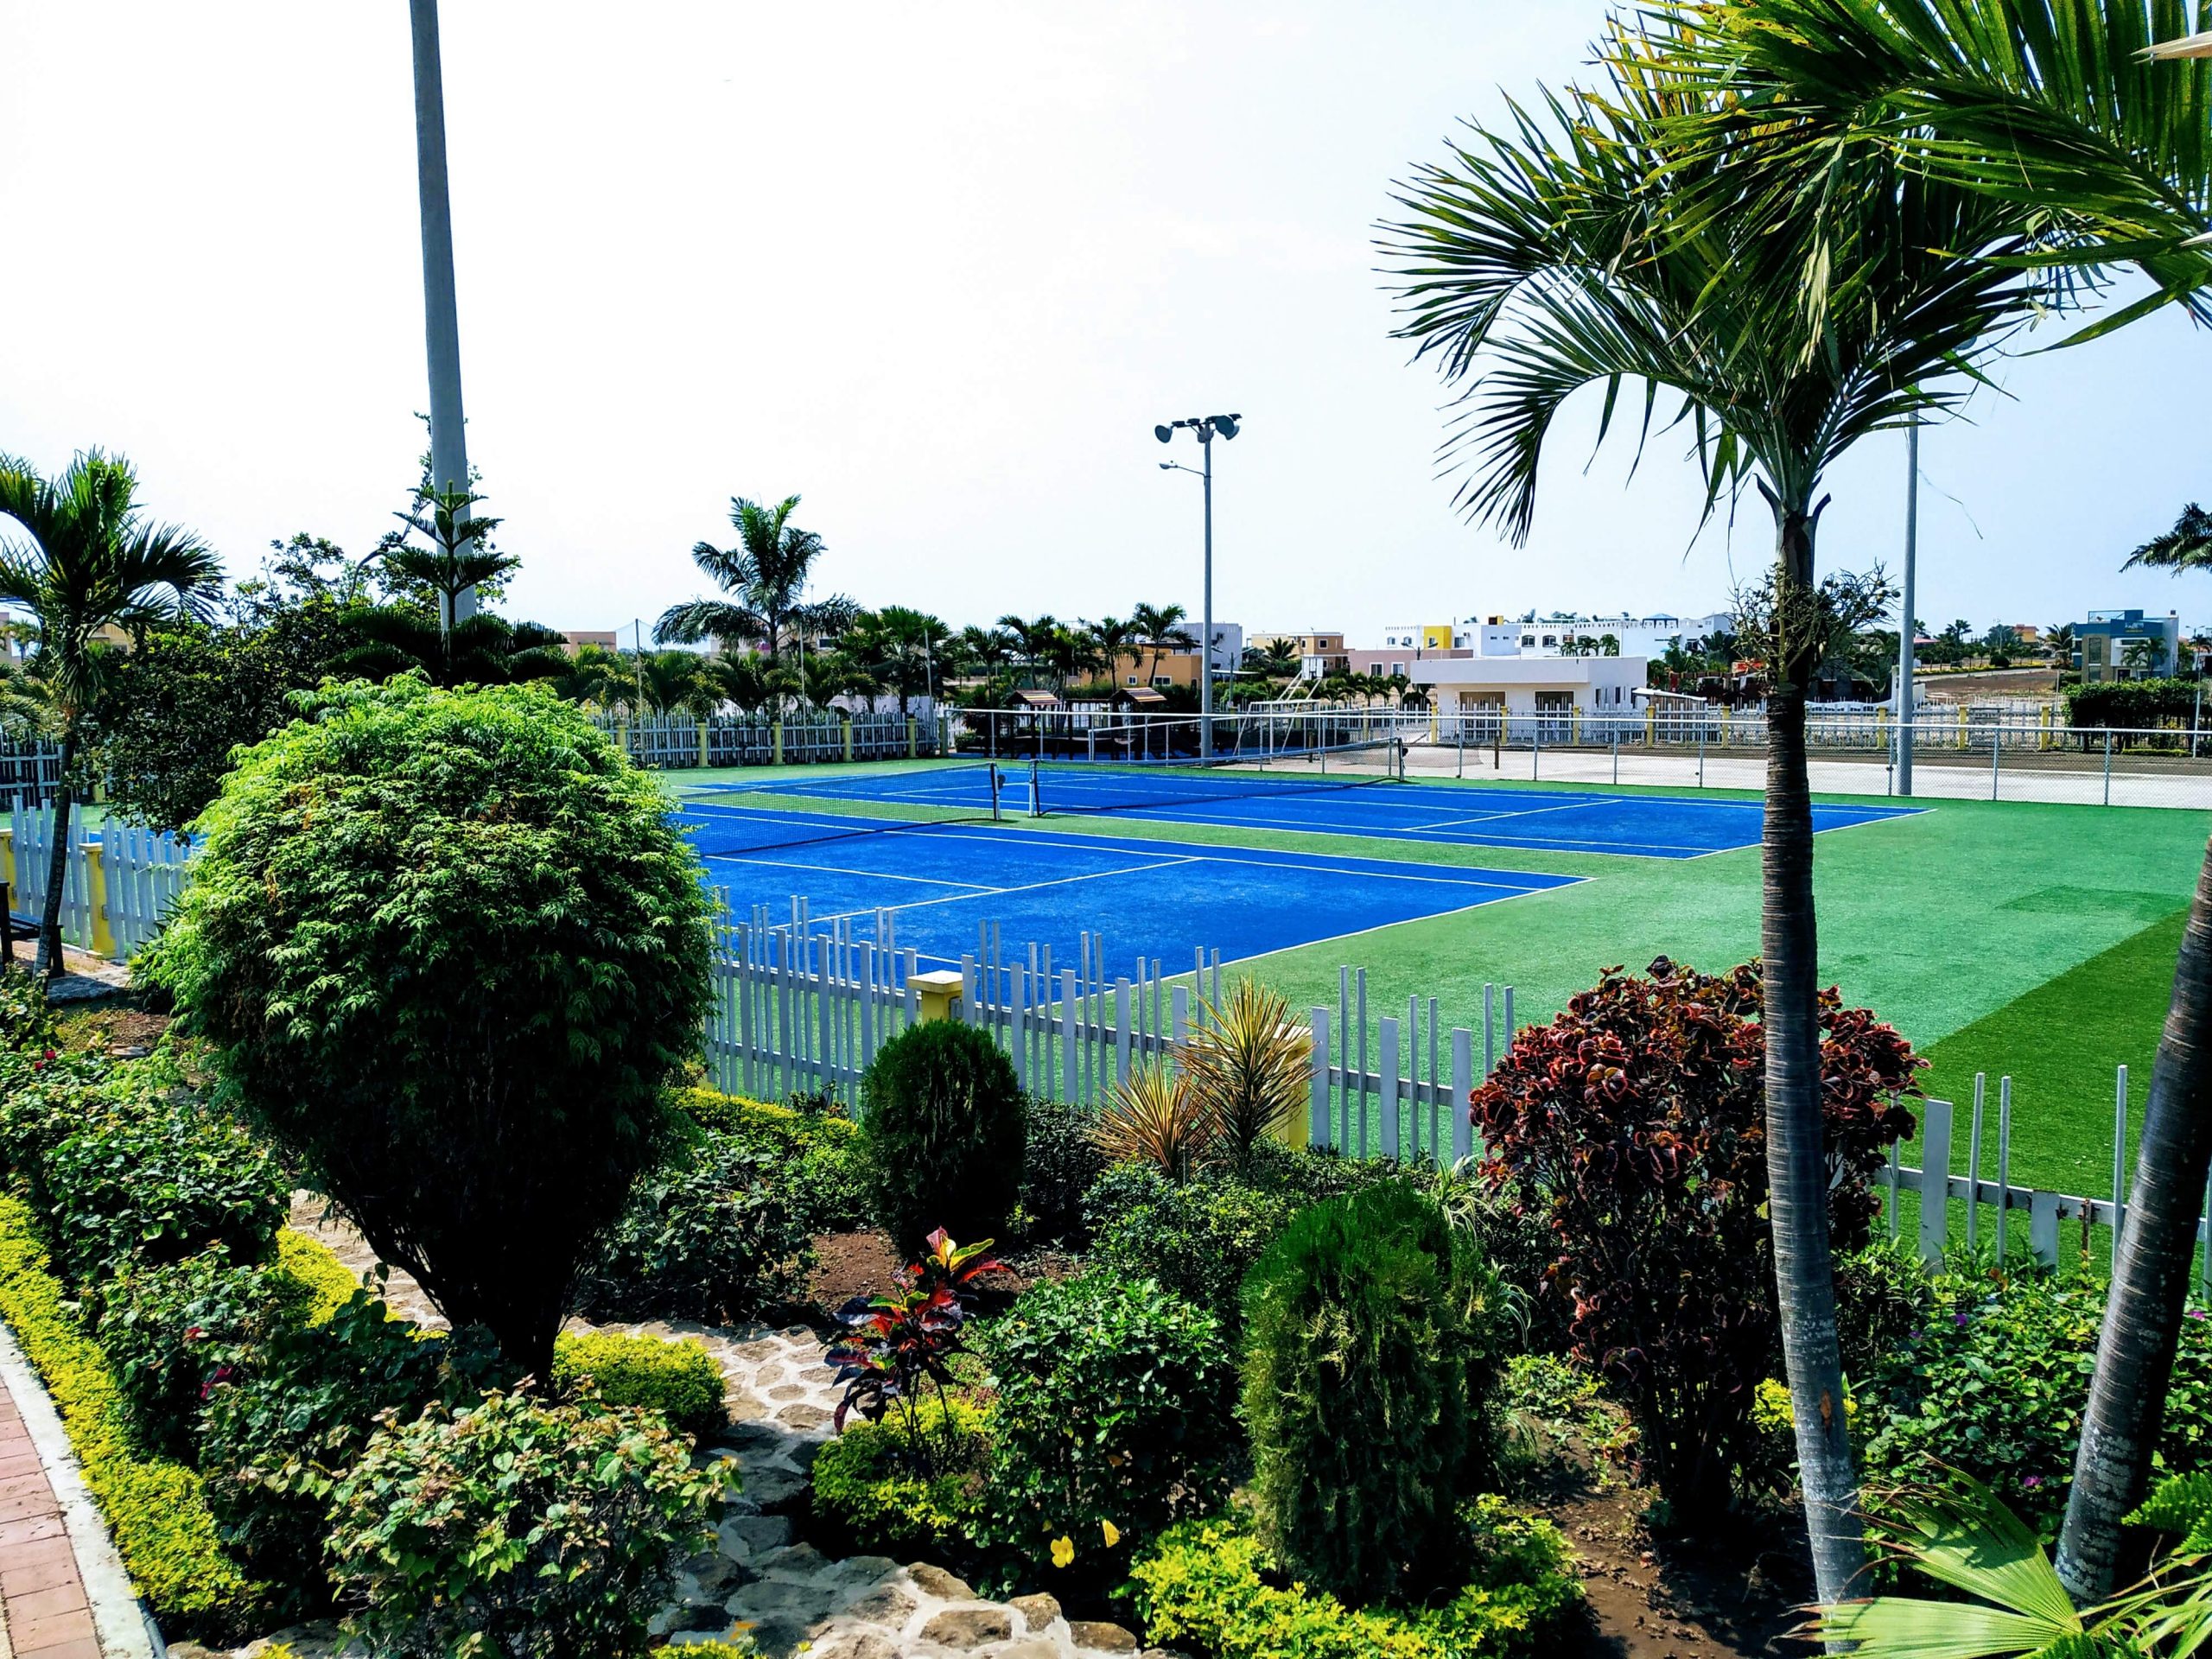 Tennis courts at Mirador San Jose